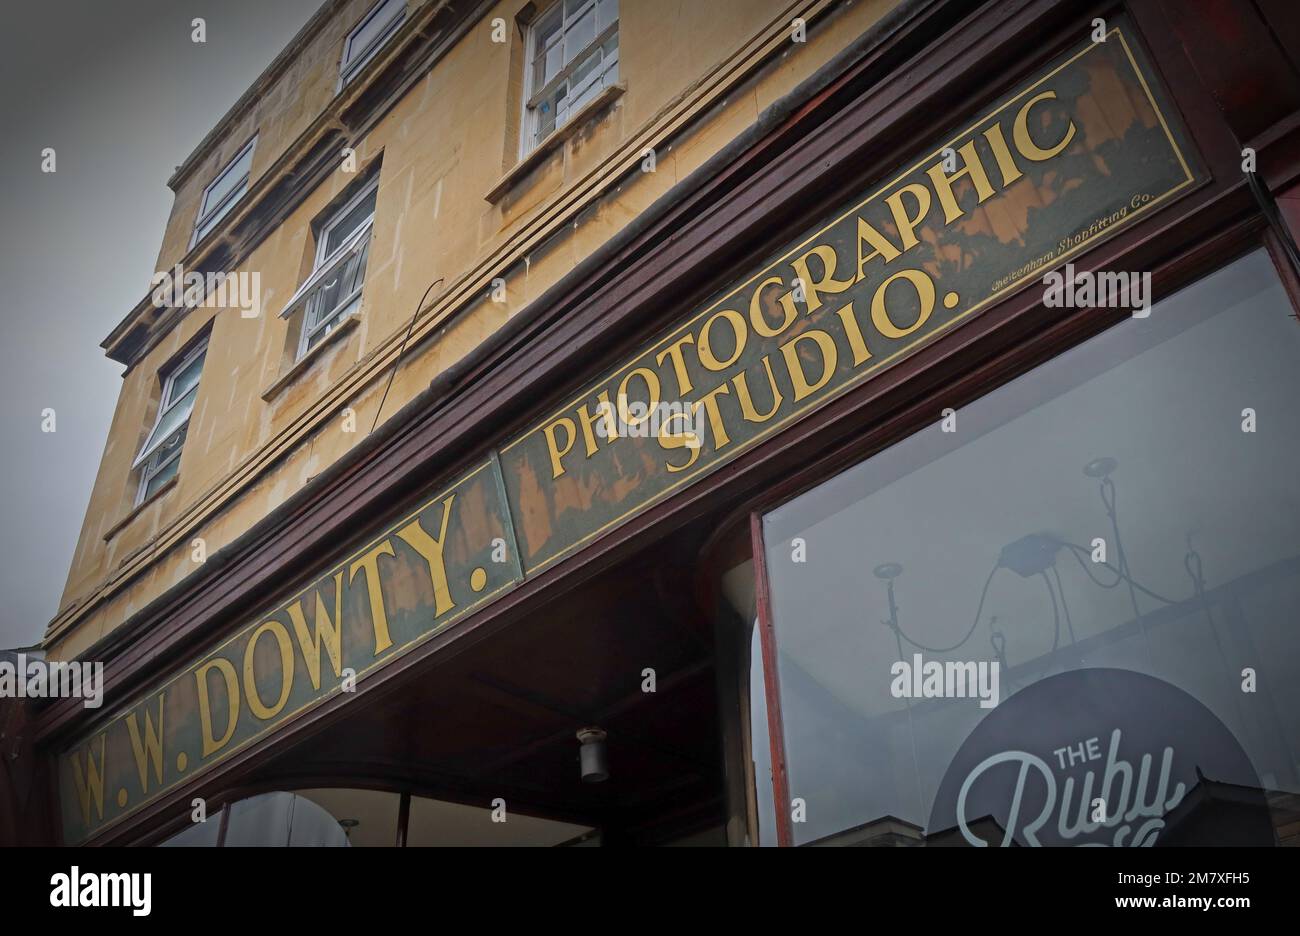 WW Dowty historic Photo Studio, 47 Winchcombe St, Cheltenham, Gloucestershire,England,UK, GL52 2NE Stock Photo